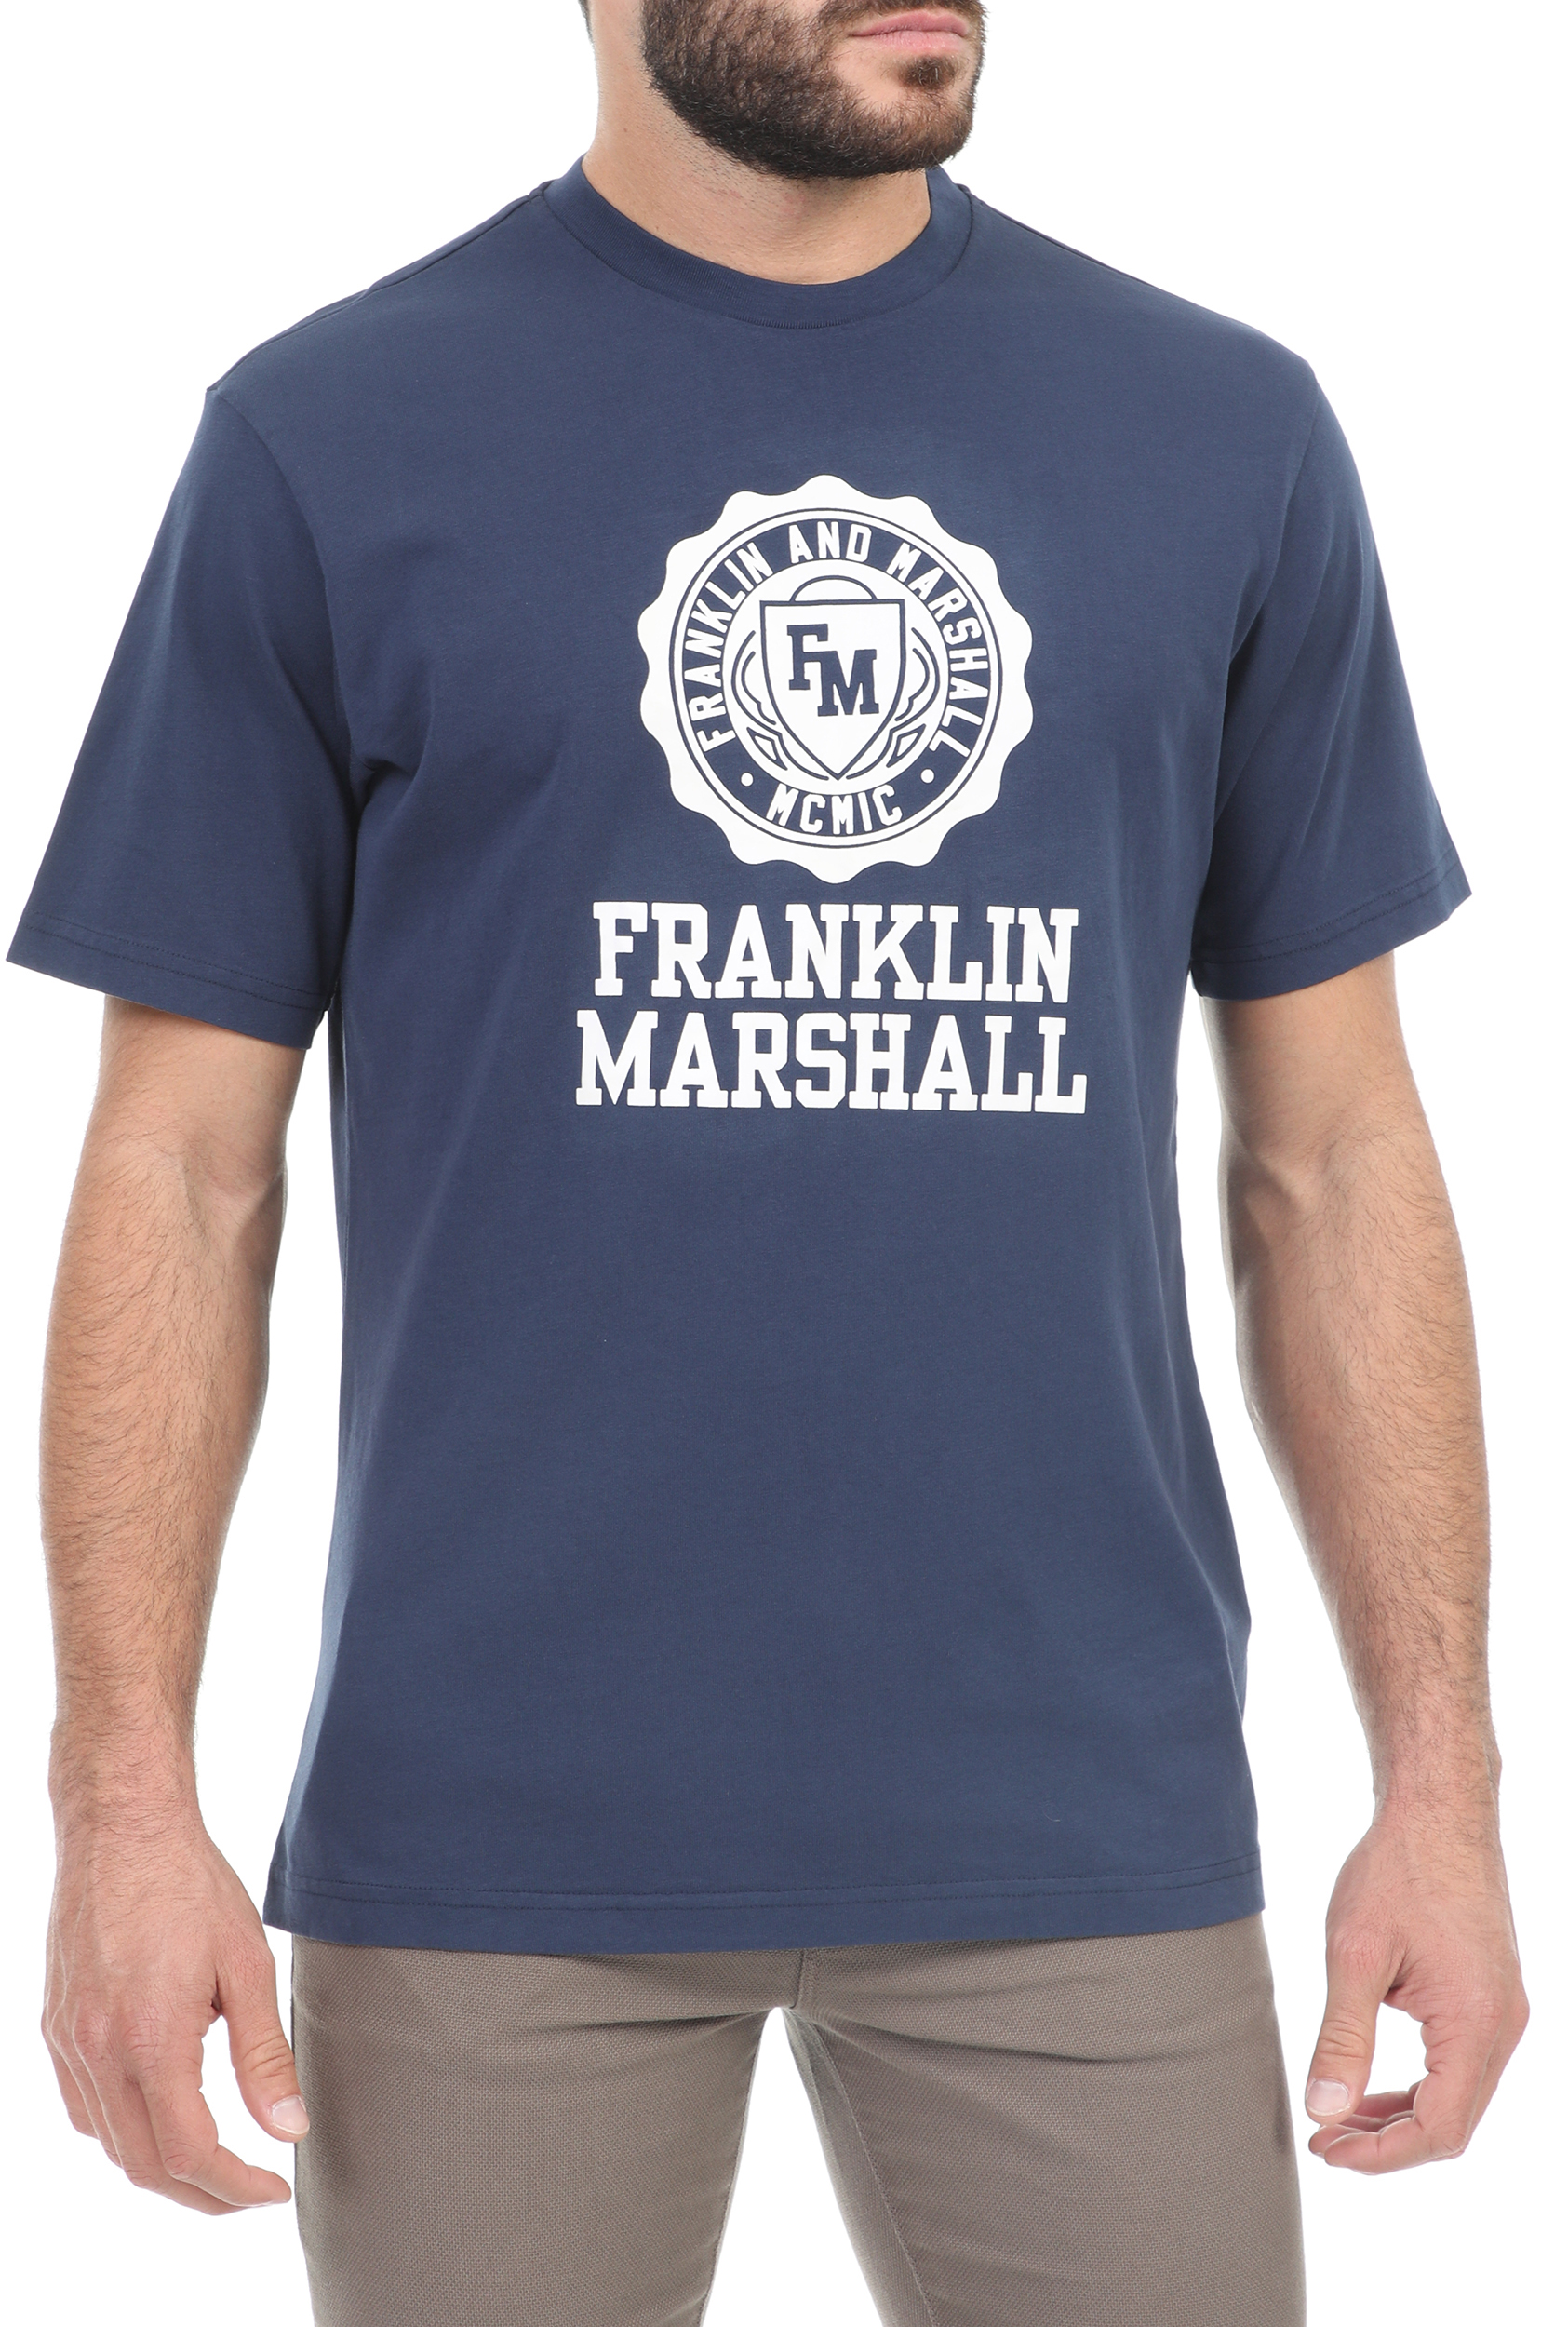 Ανδρικά/Ρούχα/Μπλούζες/Κοντομάνικες FRANKLIN & MARSHALL - Ανδρική μπλούζα FRANKLIN & MARSHALL μπλε